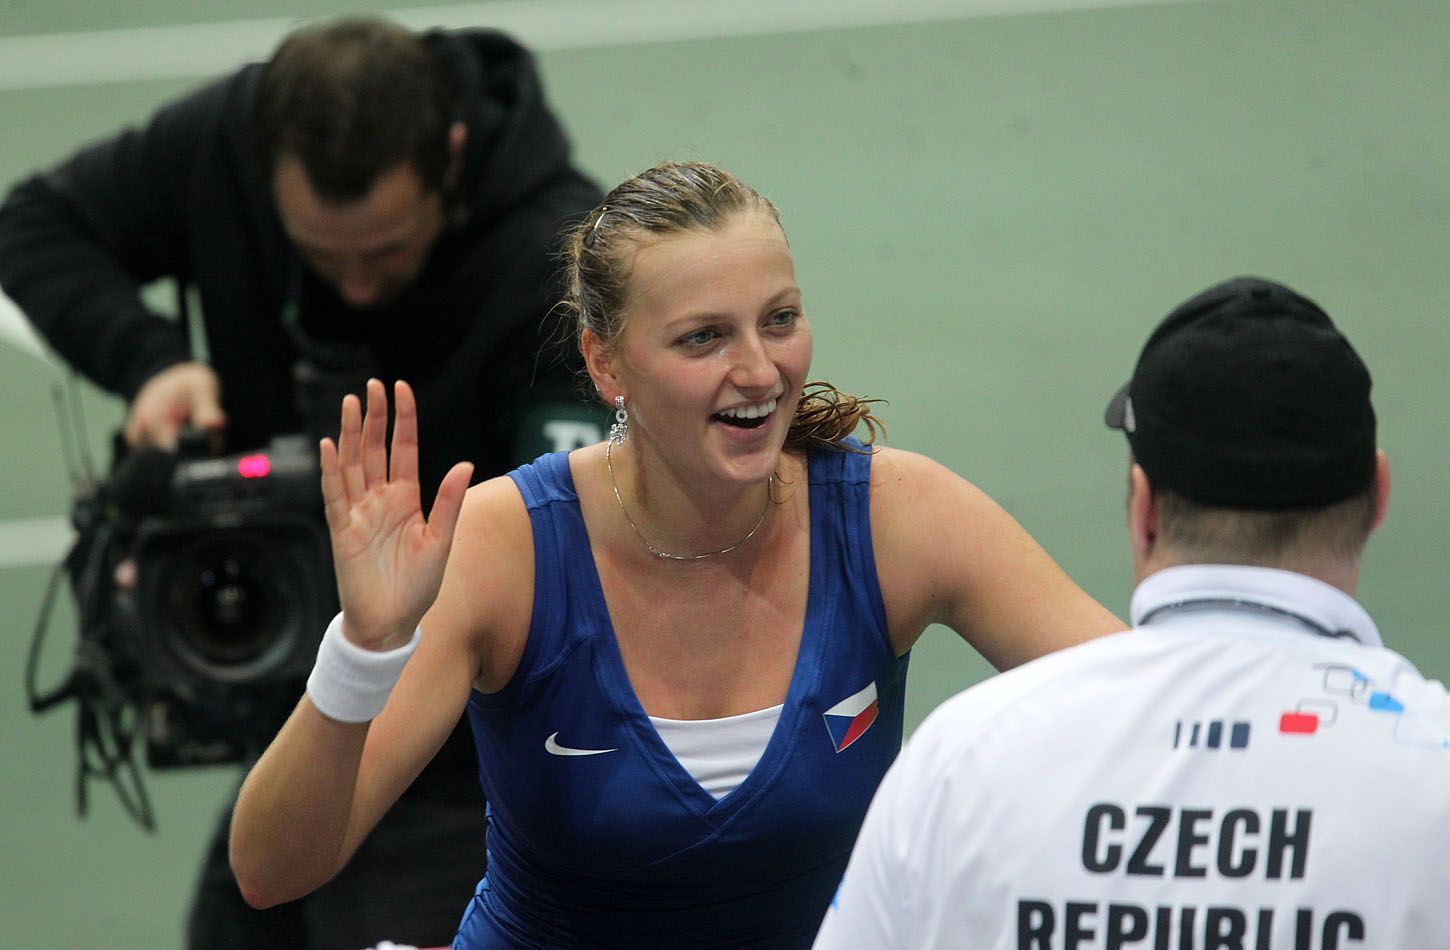 Fed Cup Česko - Austrálie: Petra Kvitová